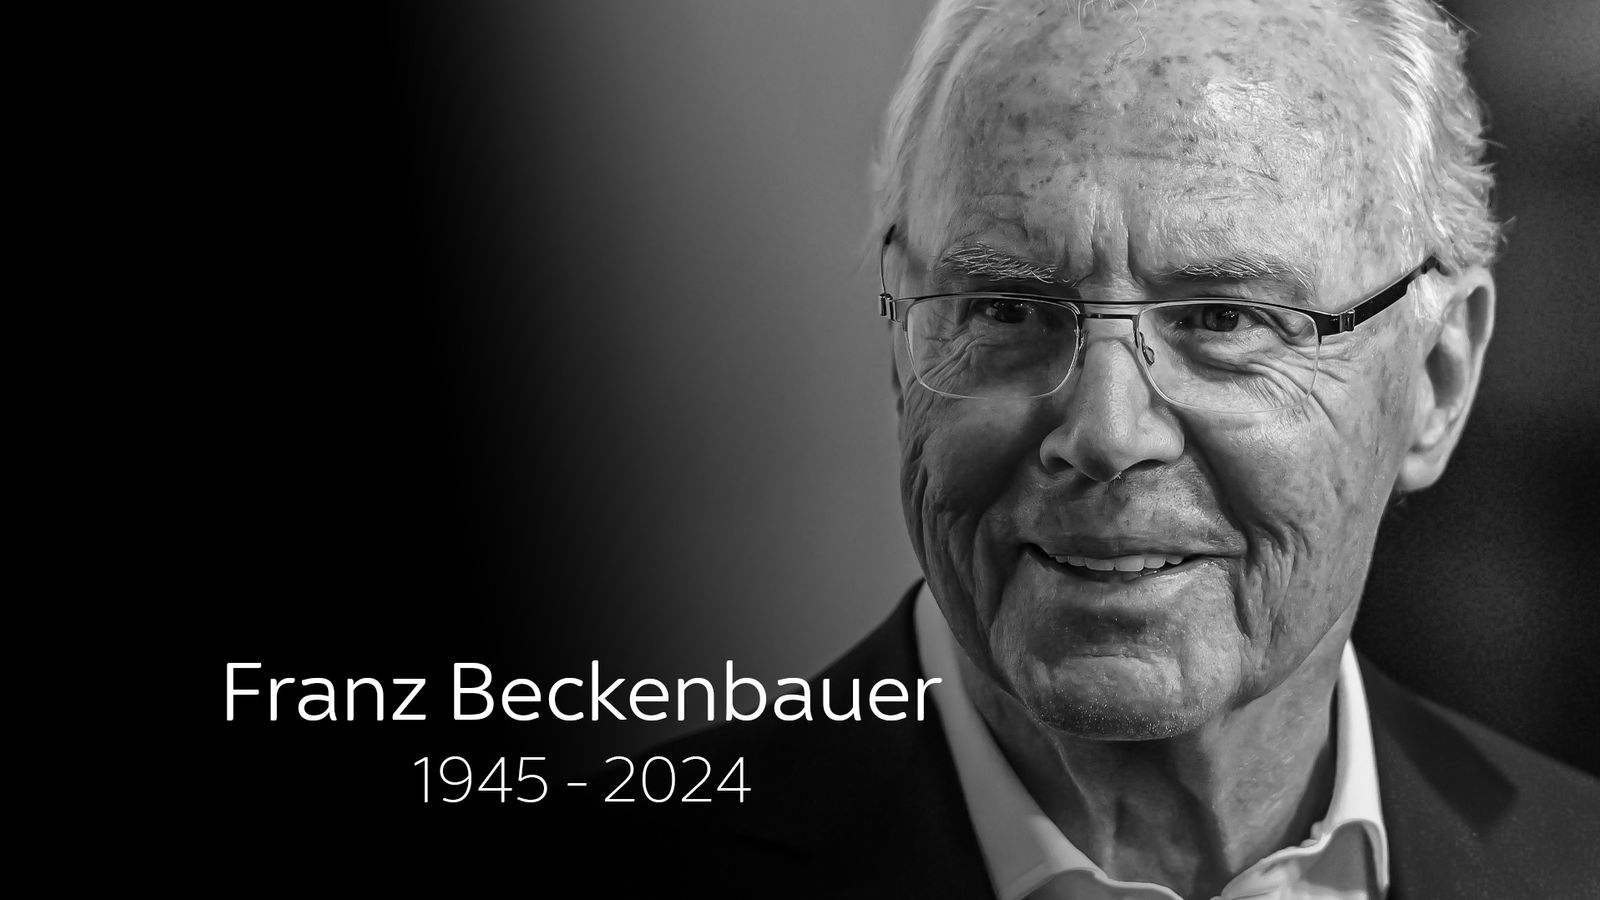 Franz Beckenbauer: Huyền thoại bóng đá Đức qua đời ở tuổi 78 | Tin tức bóng đá | Bầu trời thể thao